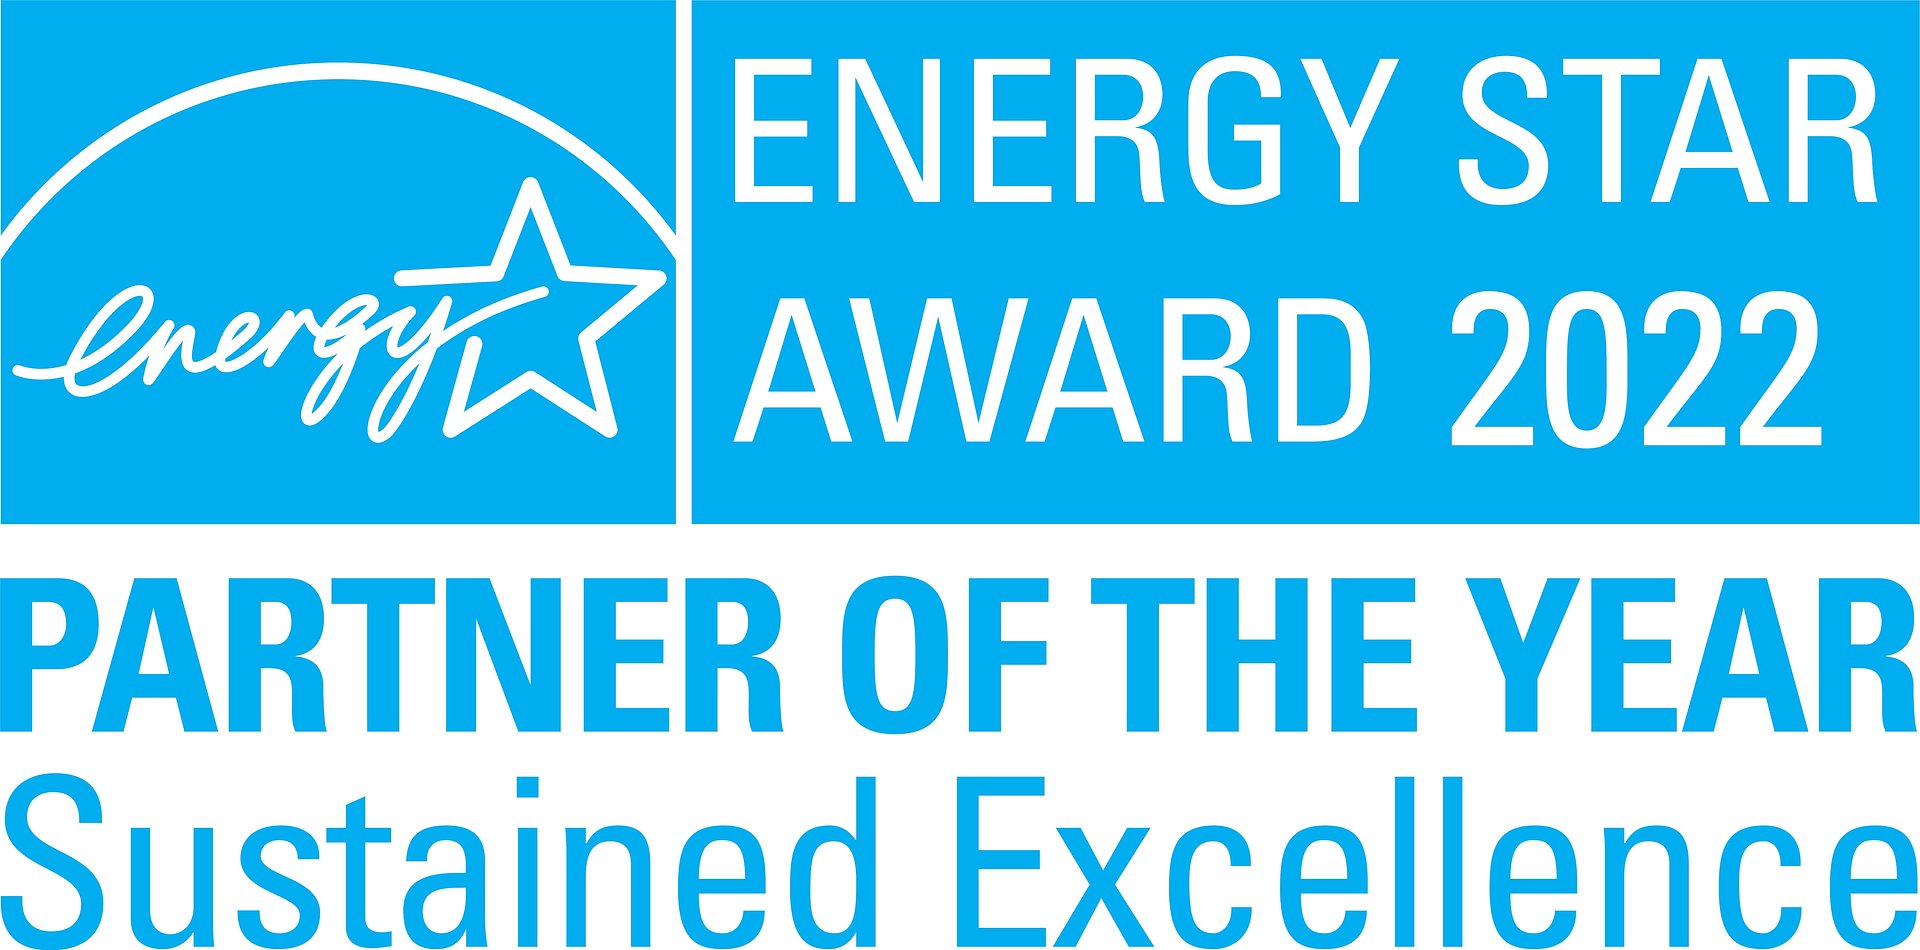 LG Electronics z tytułem partnera roku ENERGY STAR 2022 przyznanym przez amerykańską Agencję Ochrony Środowiska